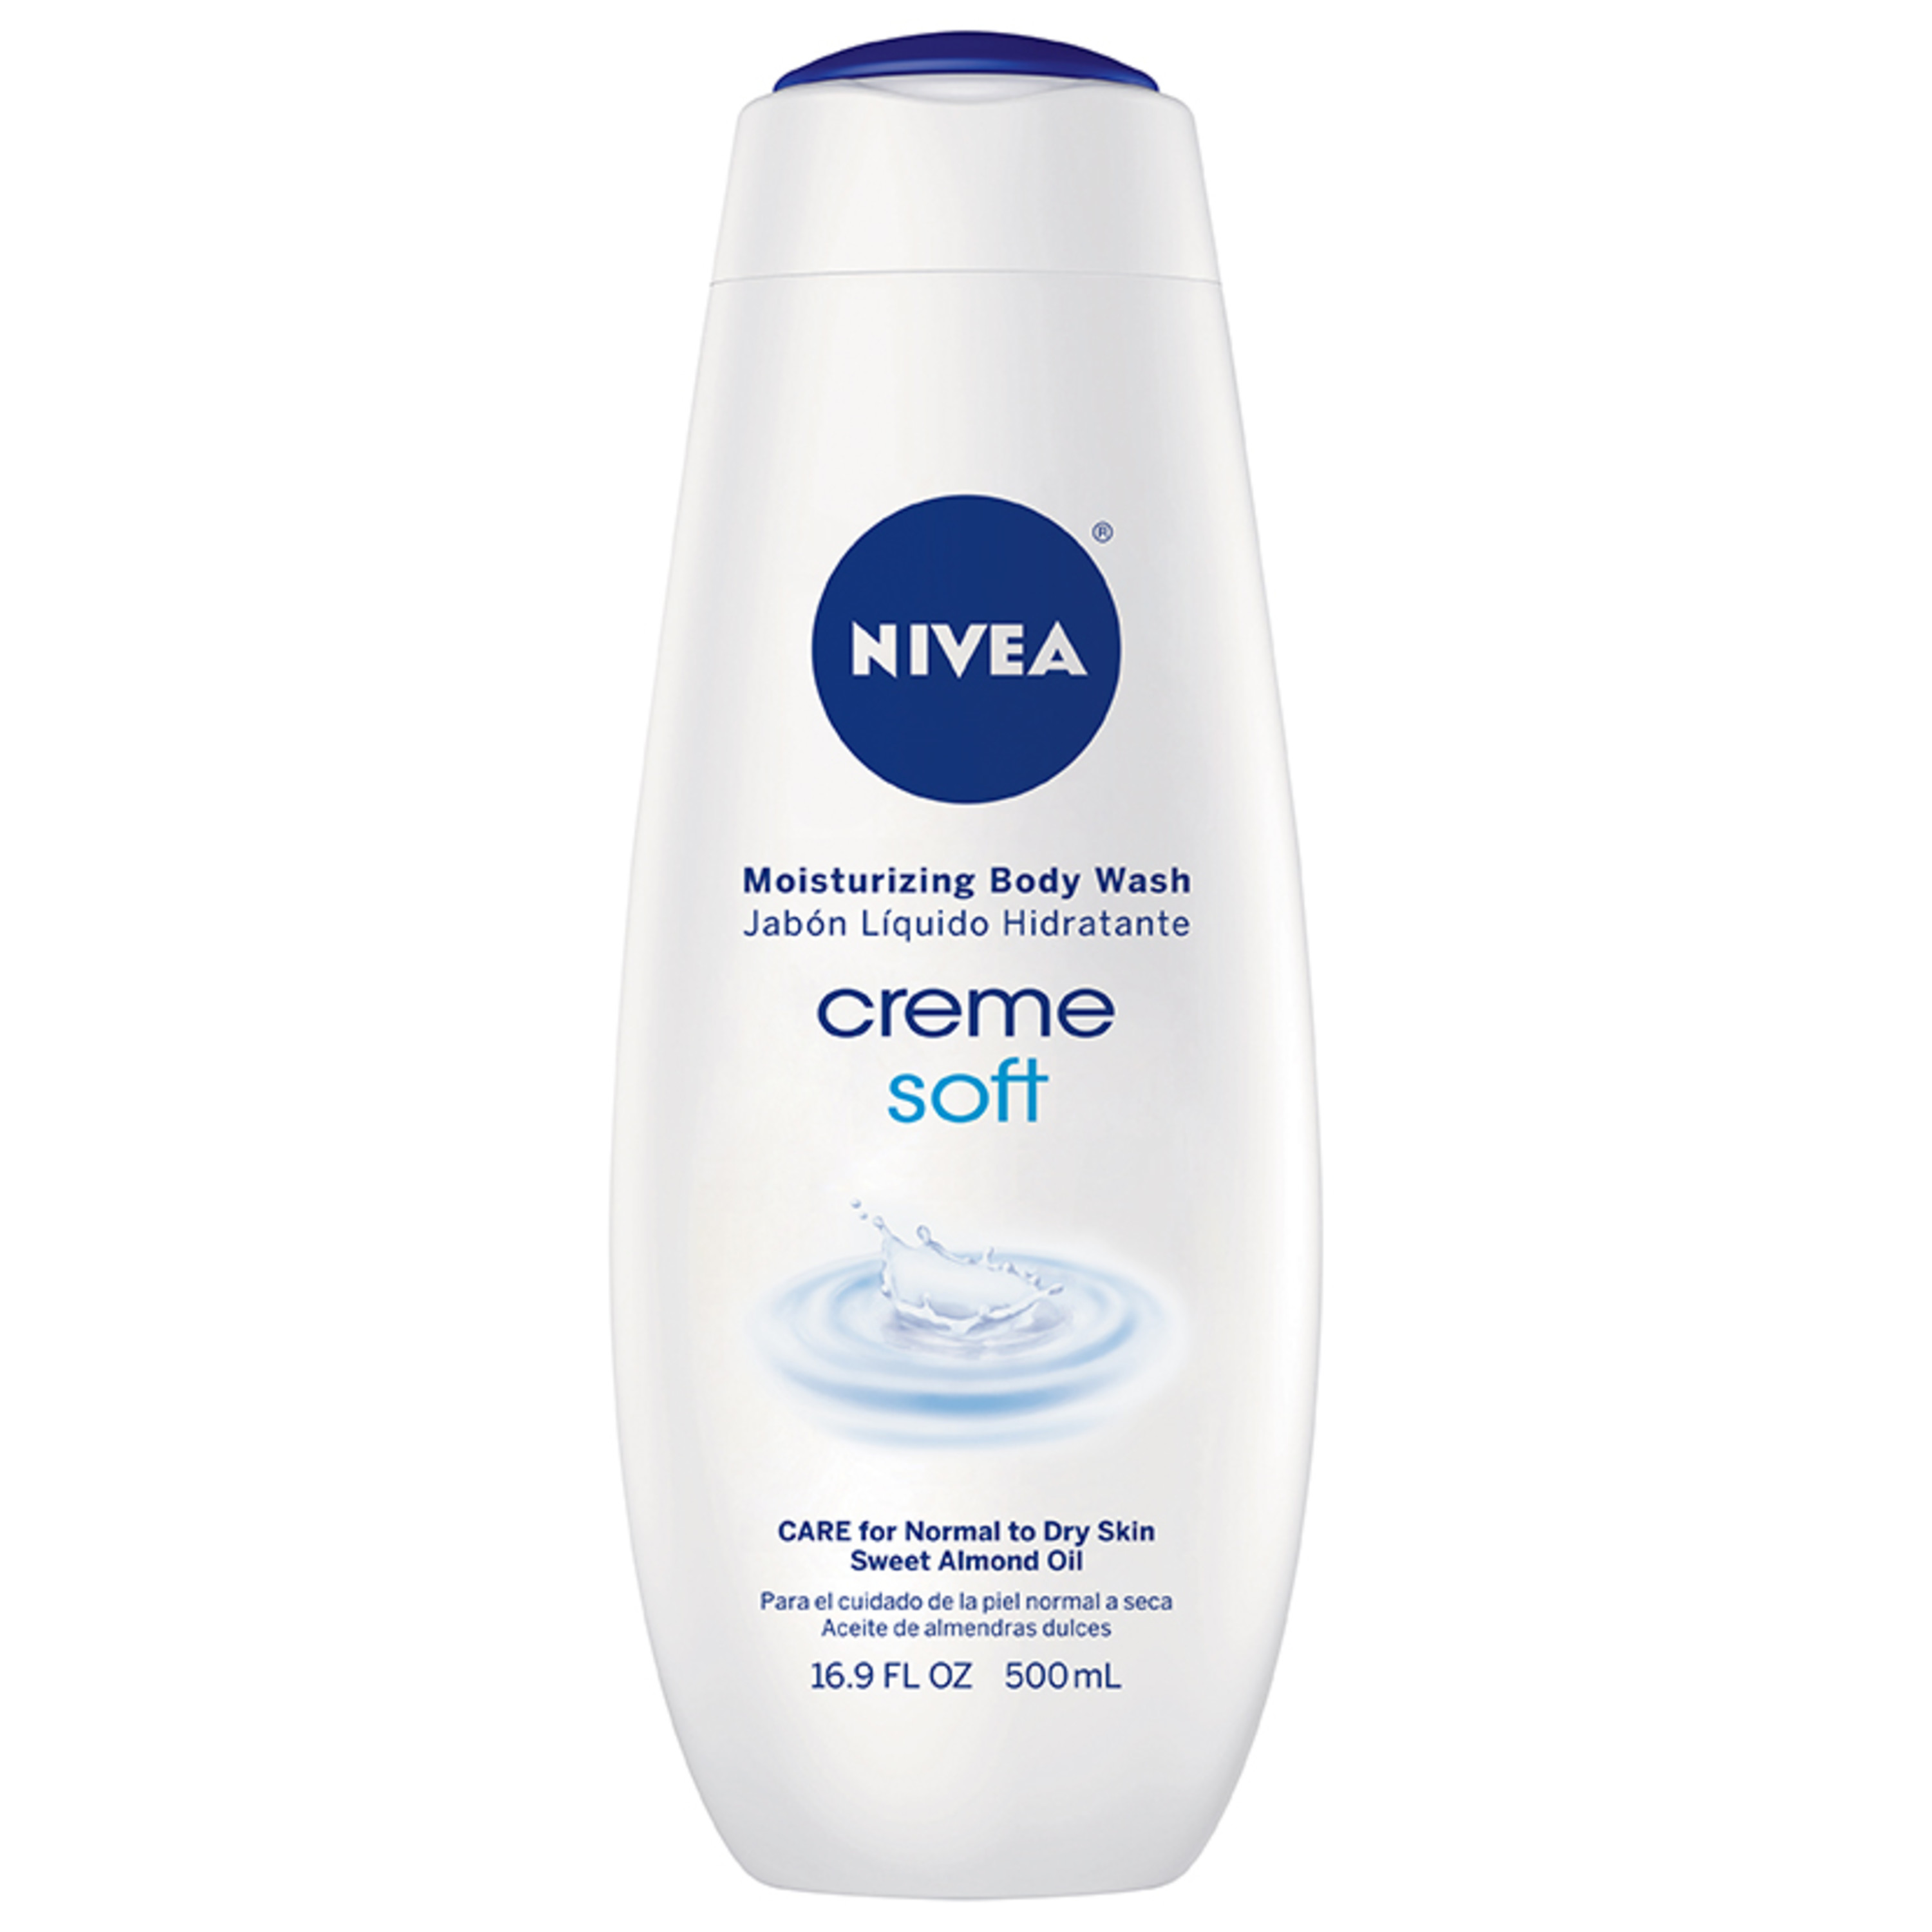 NIVEA Creme Soft Moisturizing Body Wash 16.9 fl. oz. - image 1 of 3